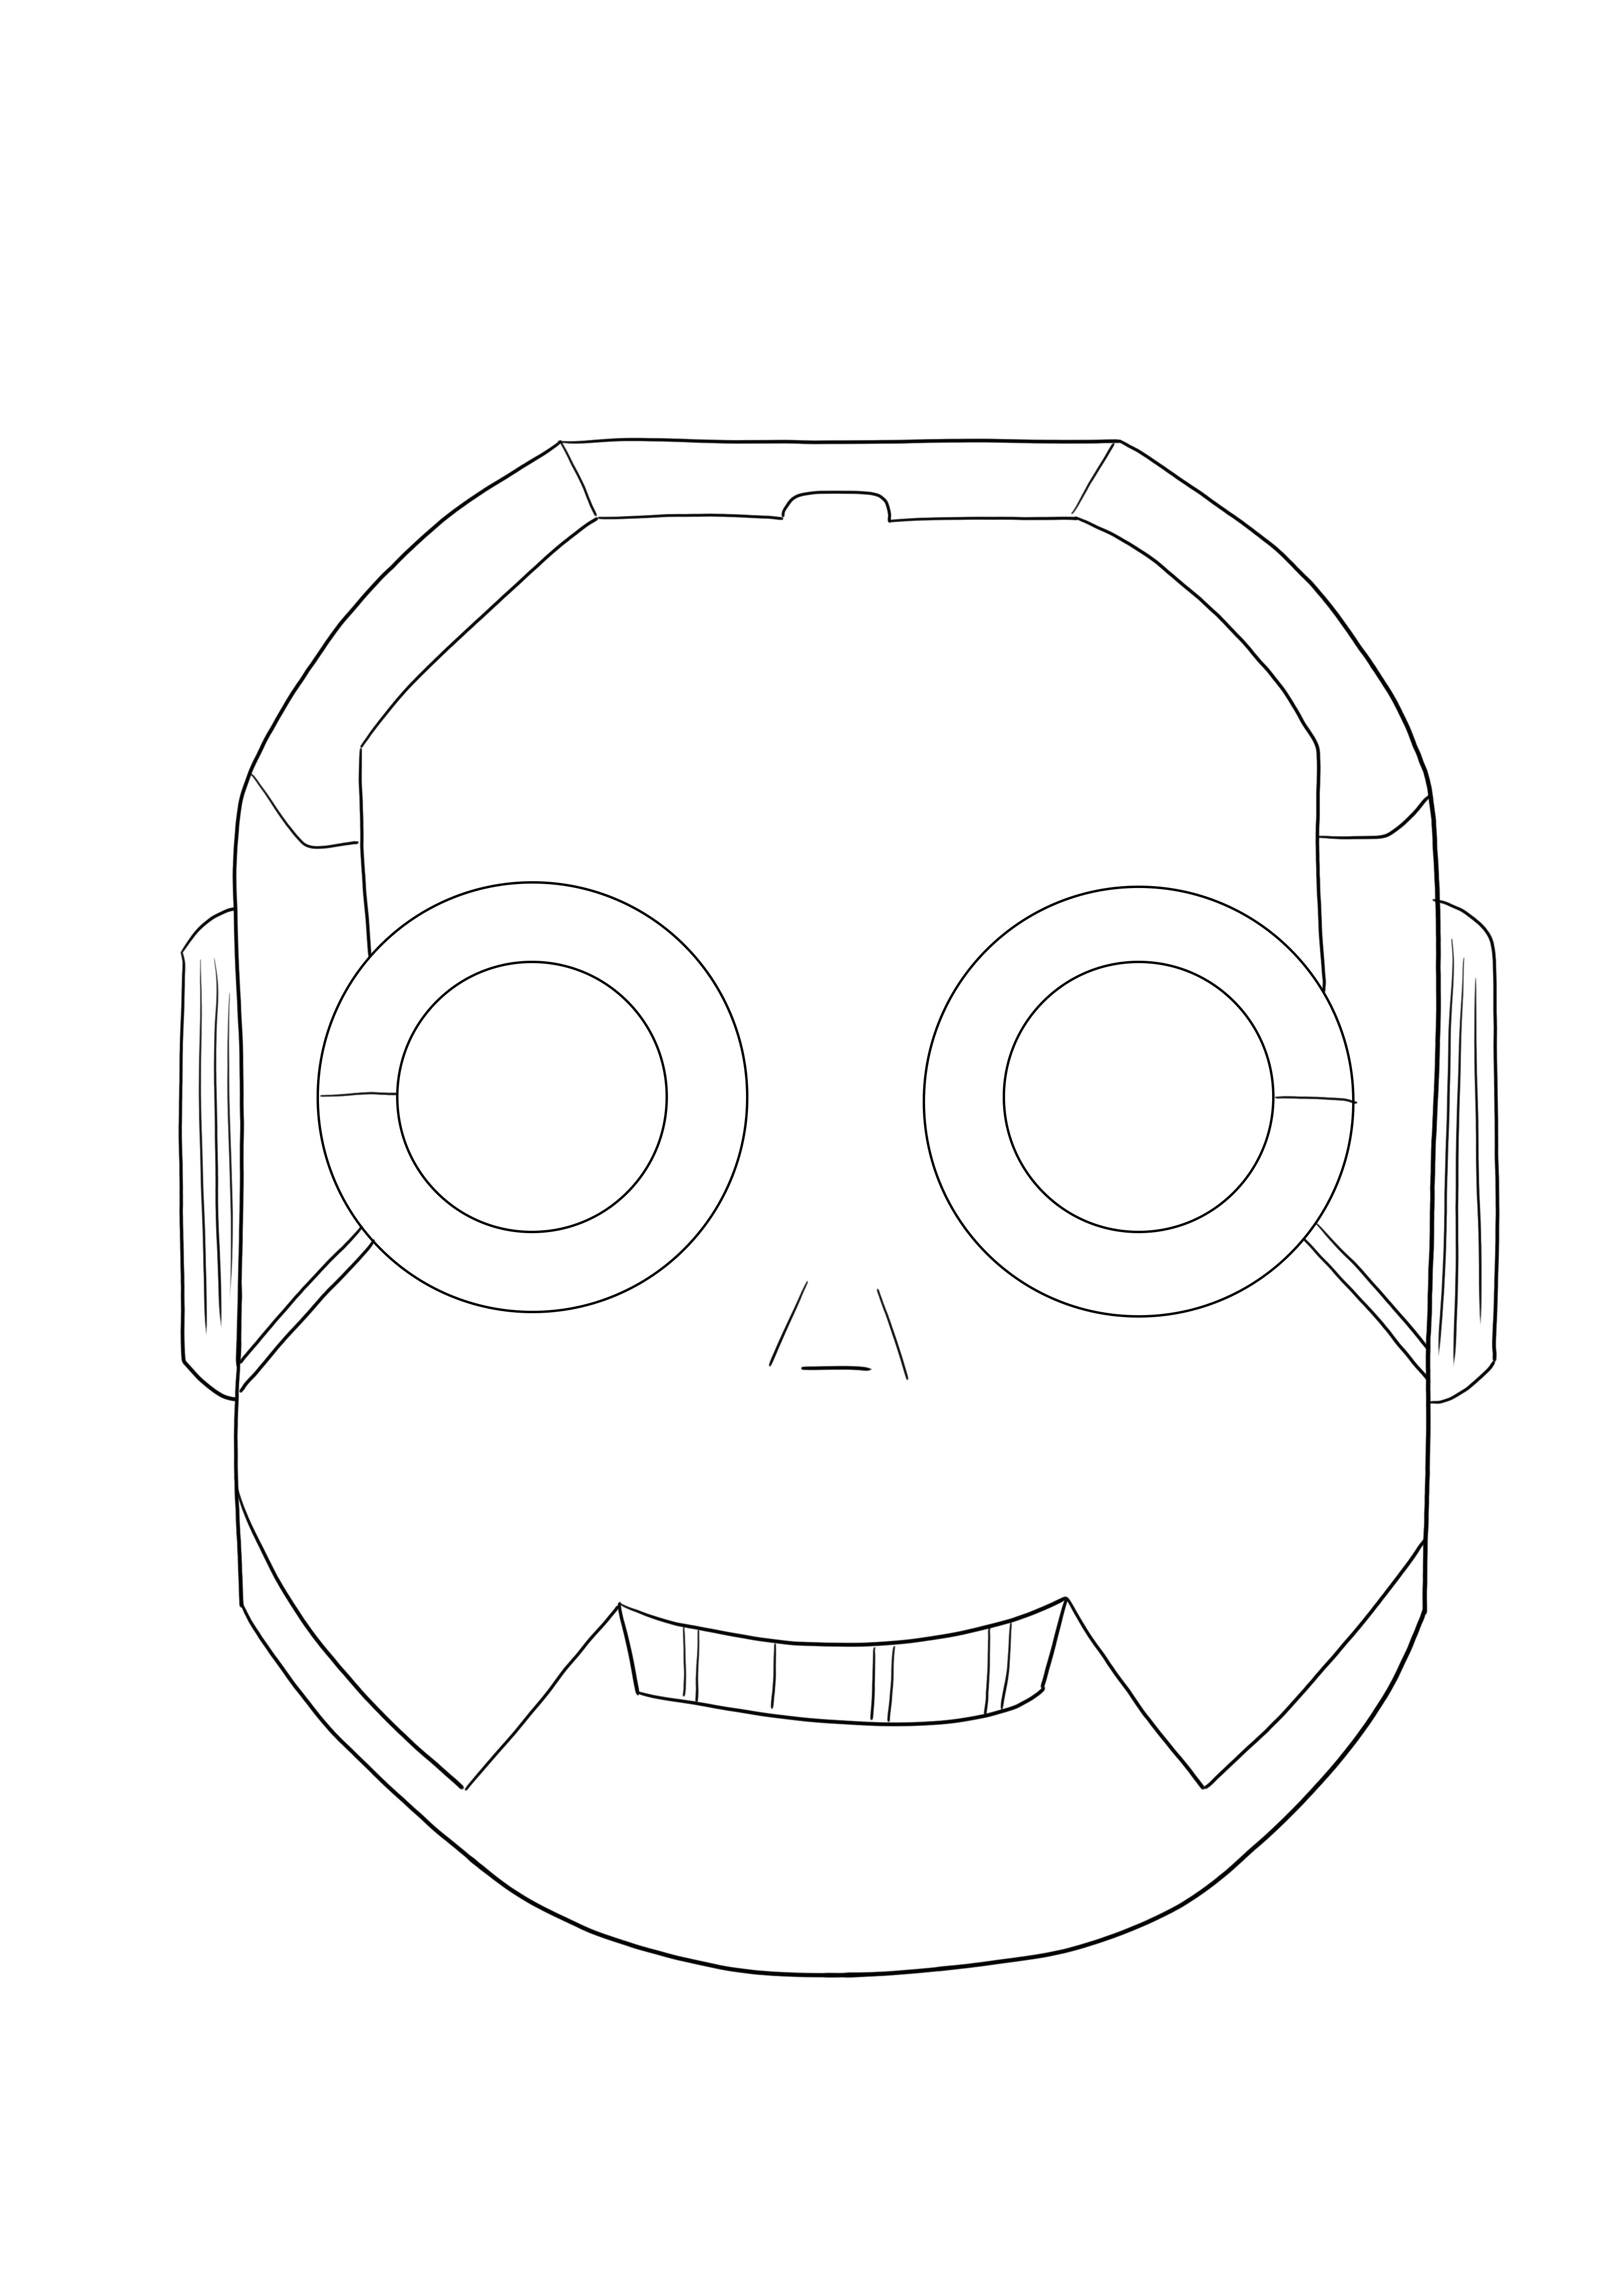 Maska robota do pobrania za darmo i pokolorowania dla dzieci